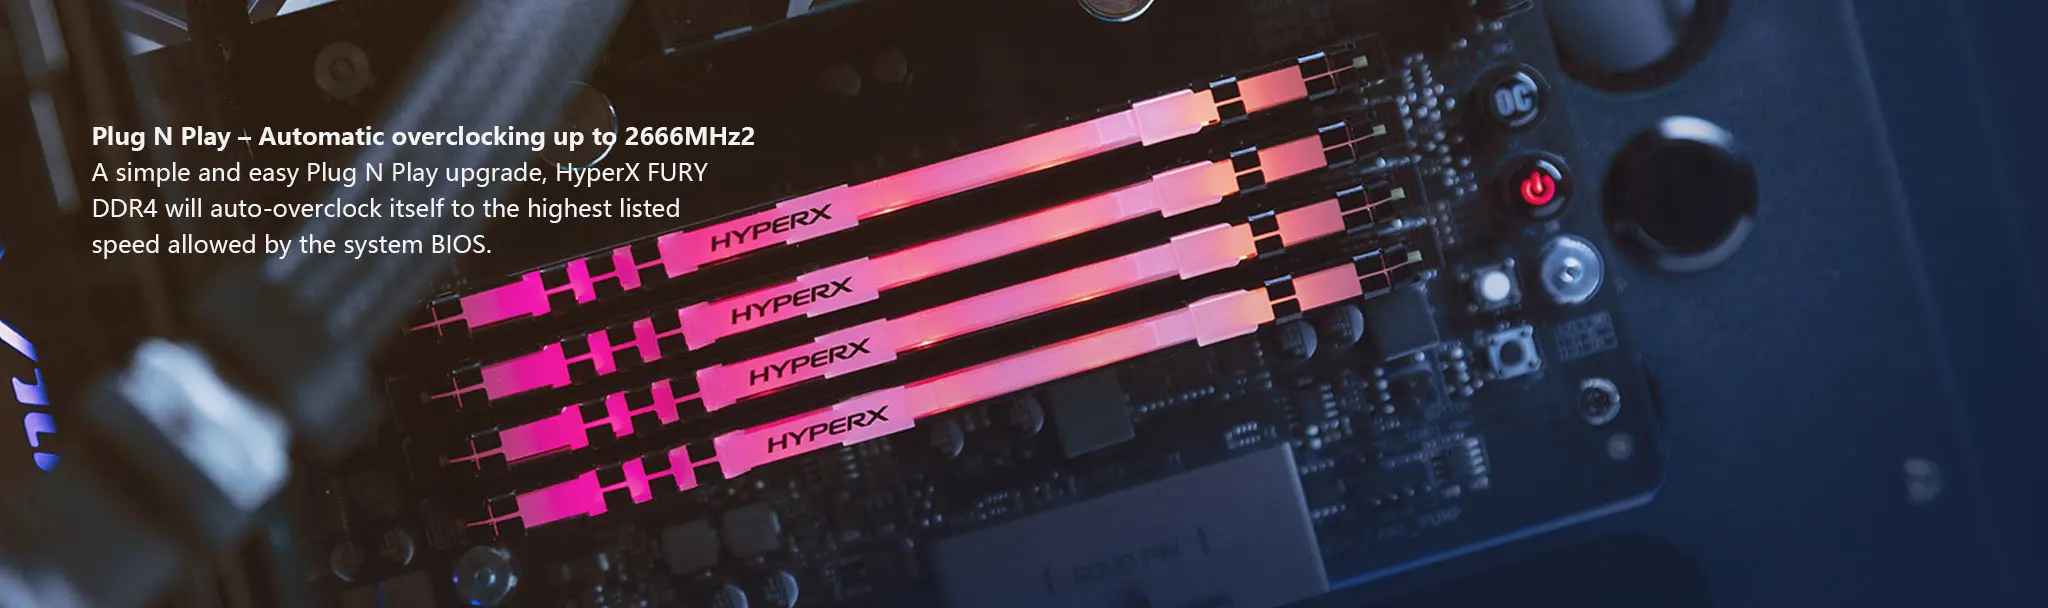 Оригинальная оперативная память HyperX FURY DDR4 RGB 2666 МГц 3200 МГц CL15 DIMM 8 Гб 16 Гб оперативная память DDR4 для рабочего стола оперативная память